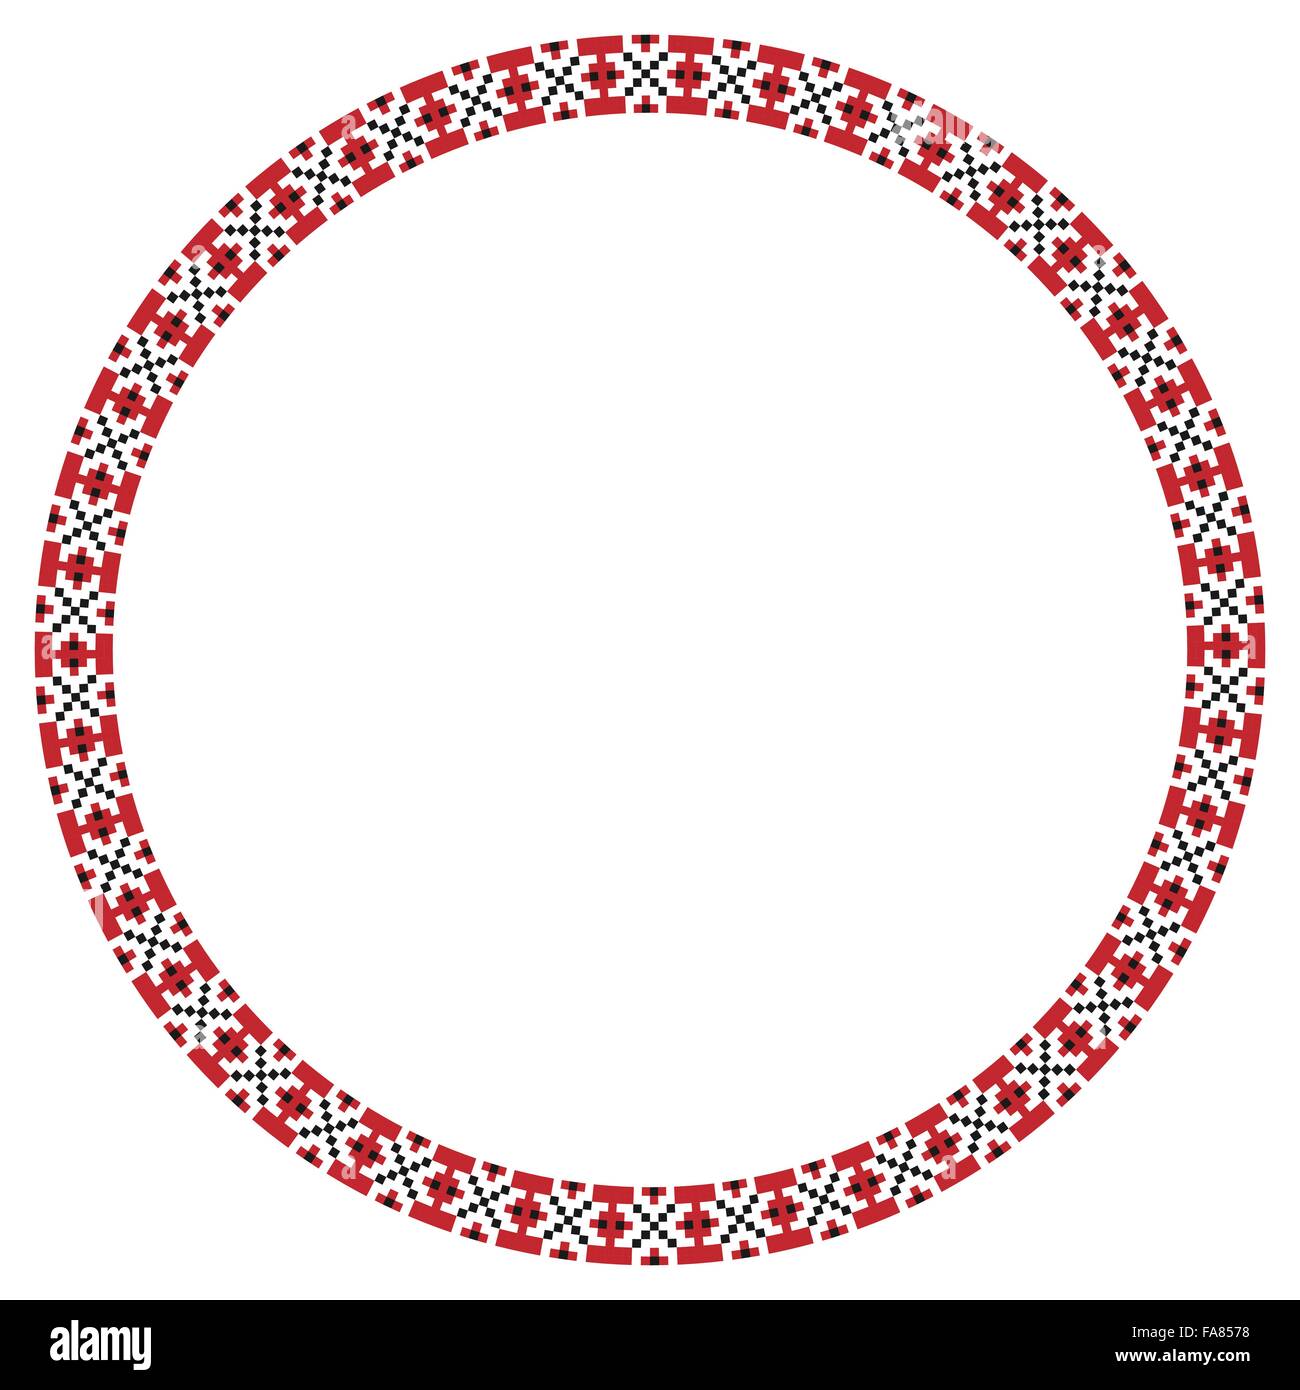 Vektor-Illustration der traditionellen slawischen Runde gestickte Muster Stock Vektor